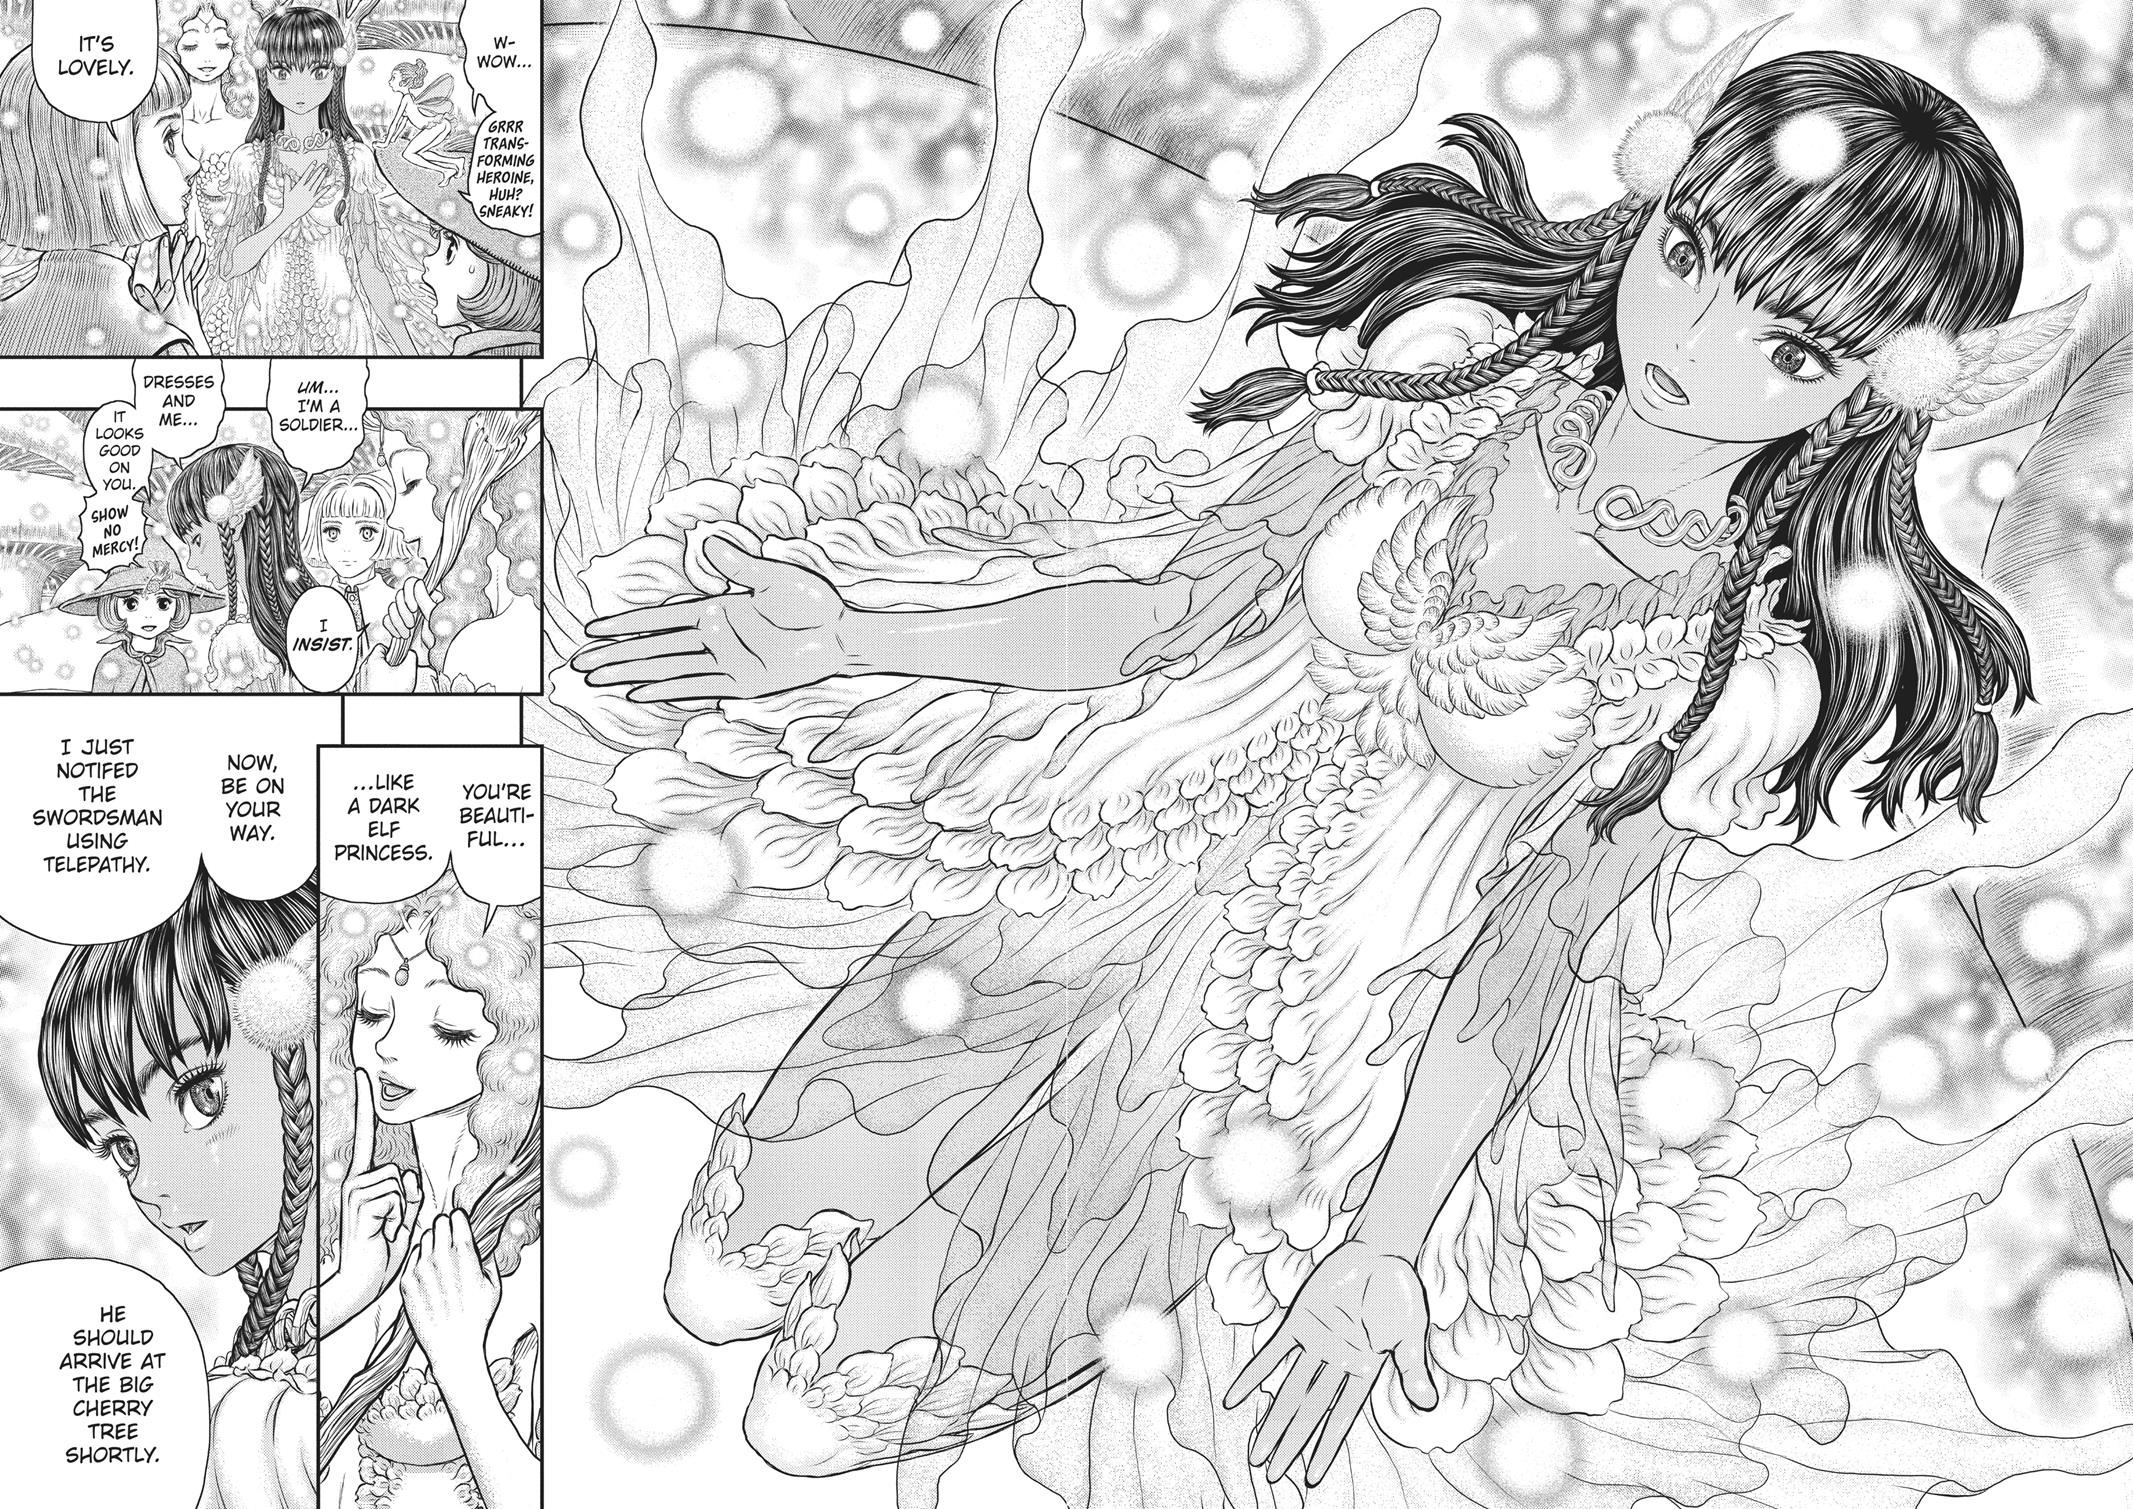 Berserk Manga Chapter 355 image 10